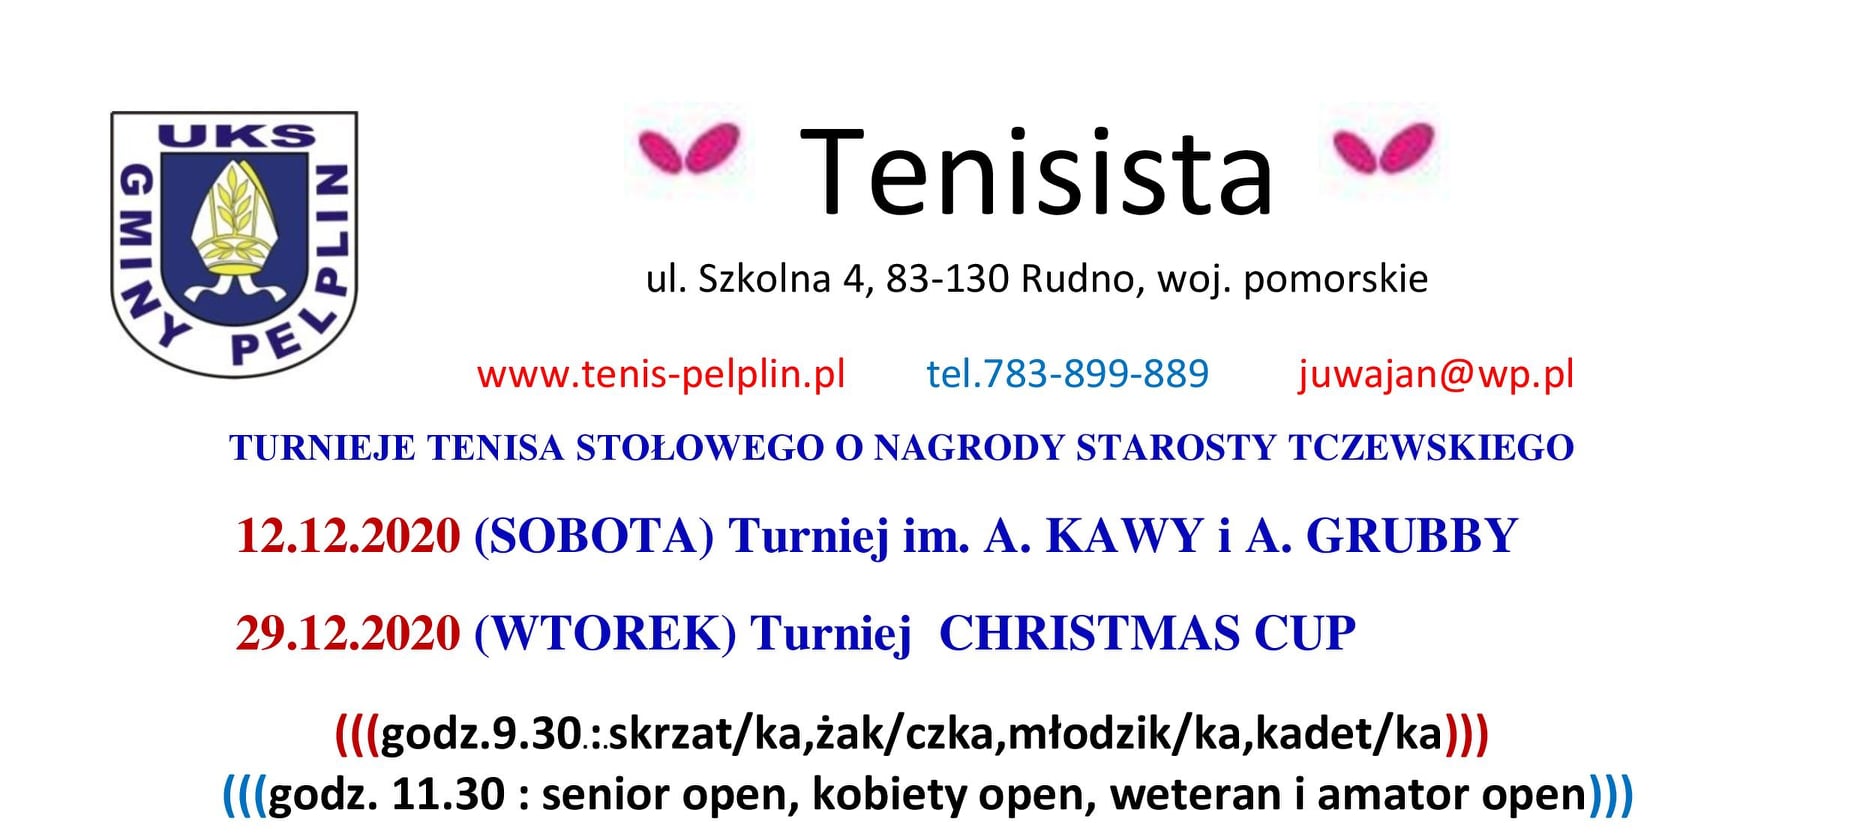 Plakat turnieju Turniej im. A. KAWY i A. GRUBBY - "Tenisista"- O NAGRODY STAROSTY TCZEWSKIEGO